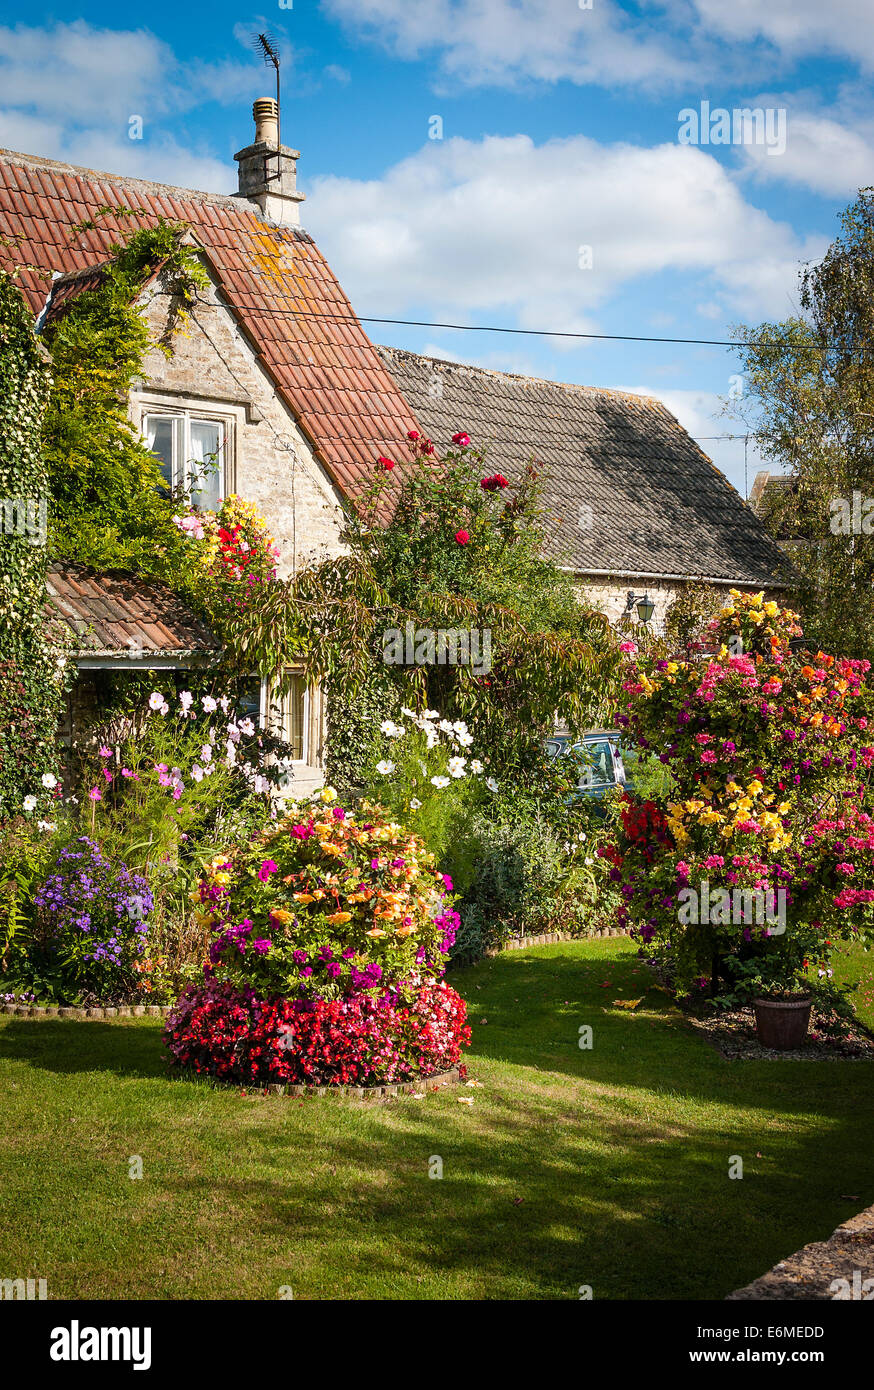 Petit jardin de fleurs avant dans un village anglais Banque D'Images